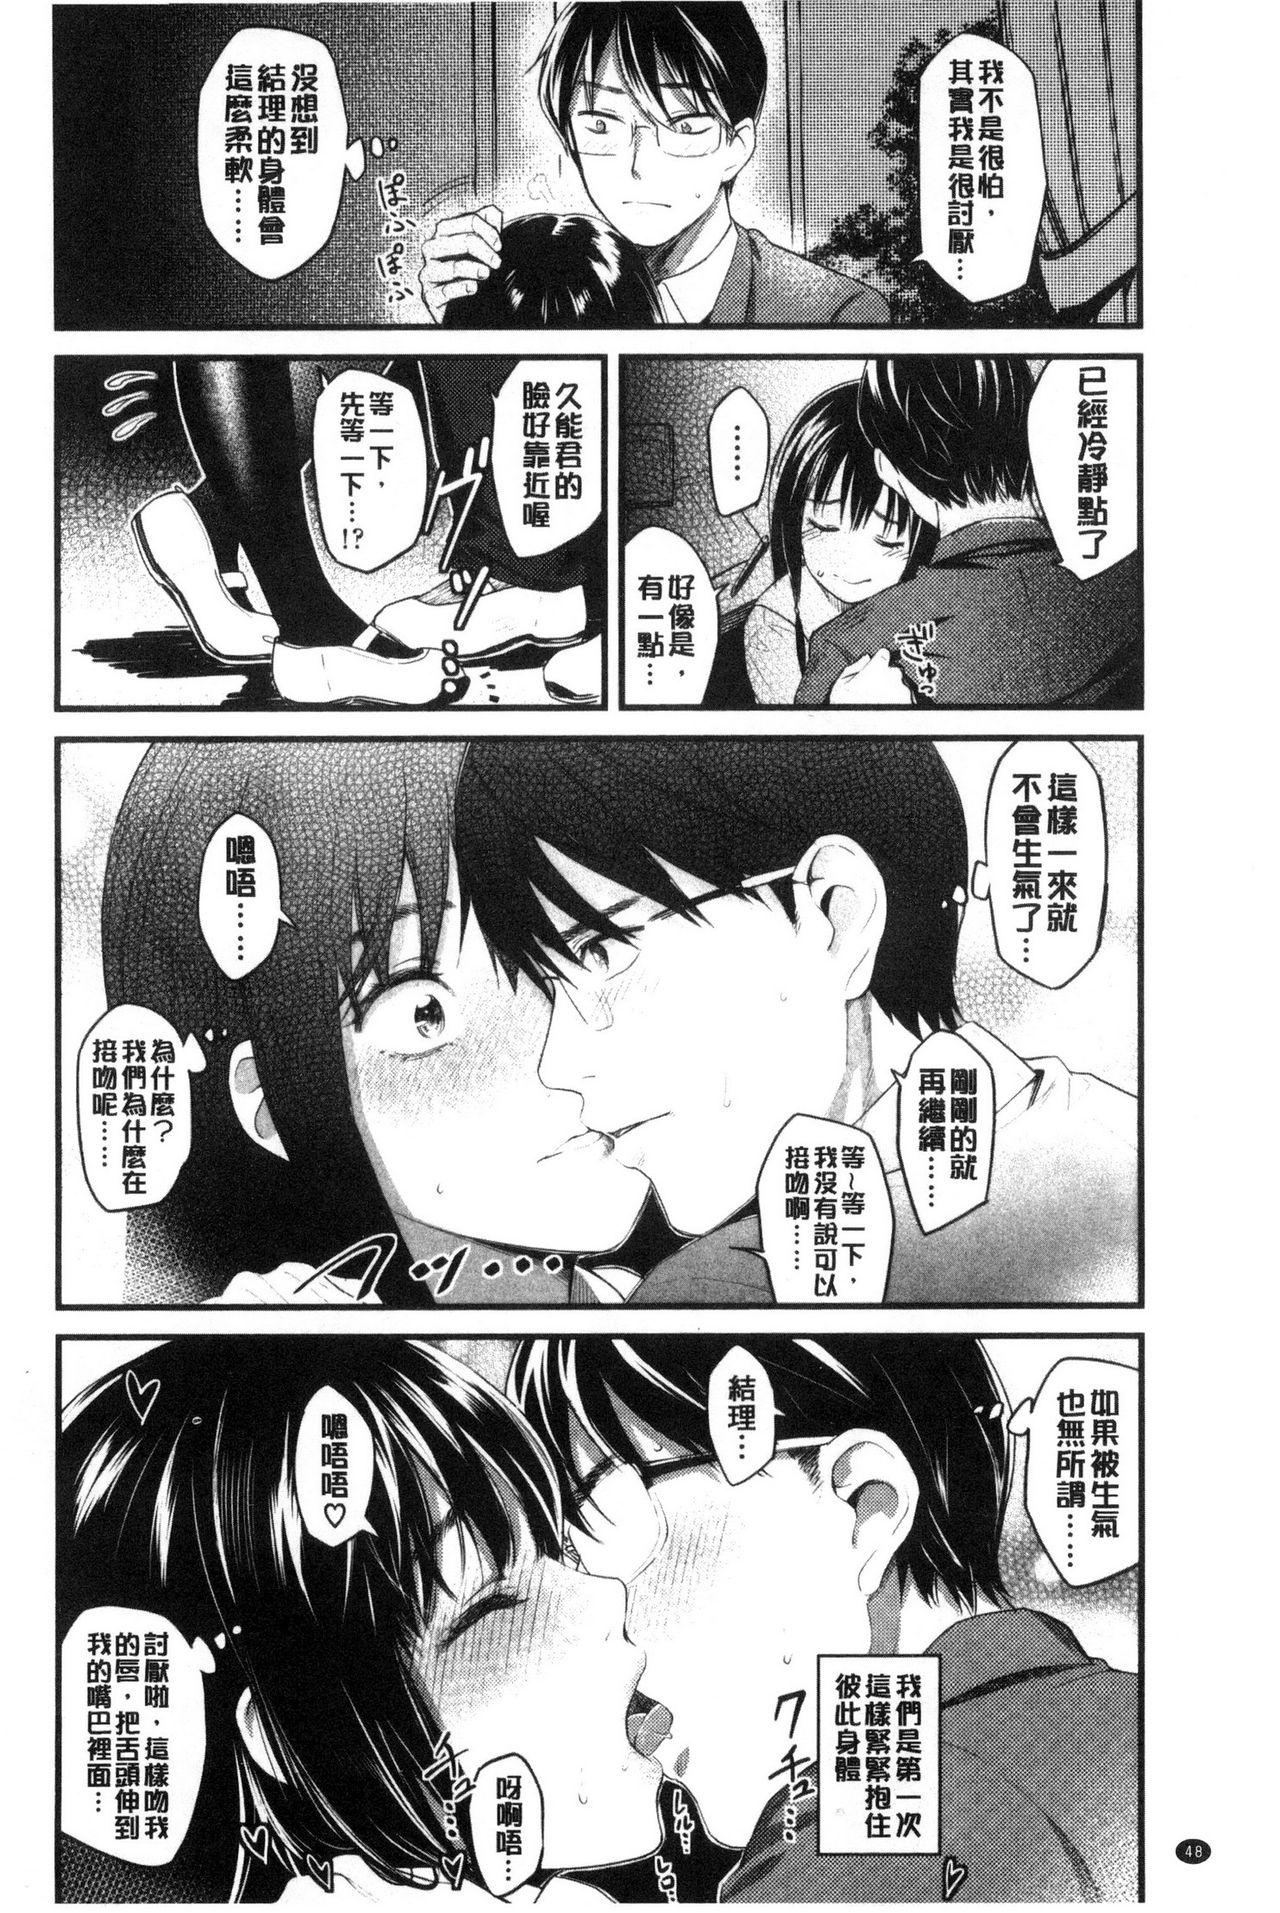 Seifuku no Mama Aishinasai! - Love in school uniform 49